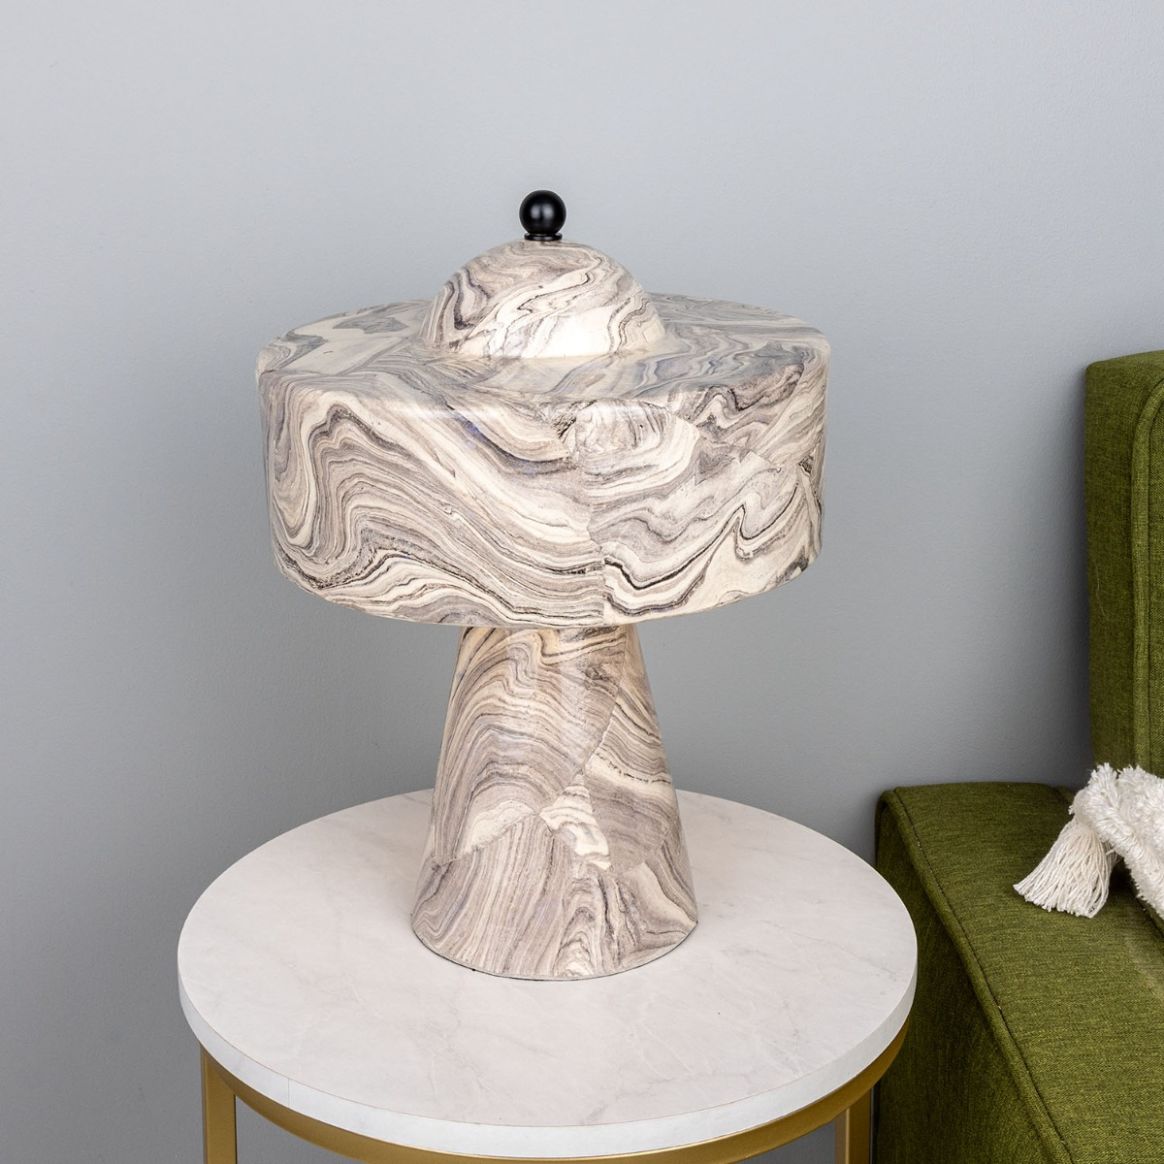 Lampe de table haute en céramique Cassia avec abat-jour et dôme en laiton,  couleur bleu terre